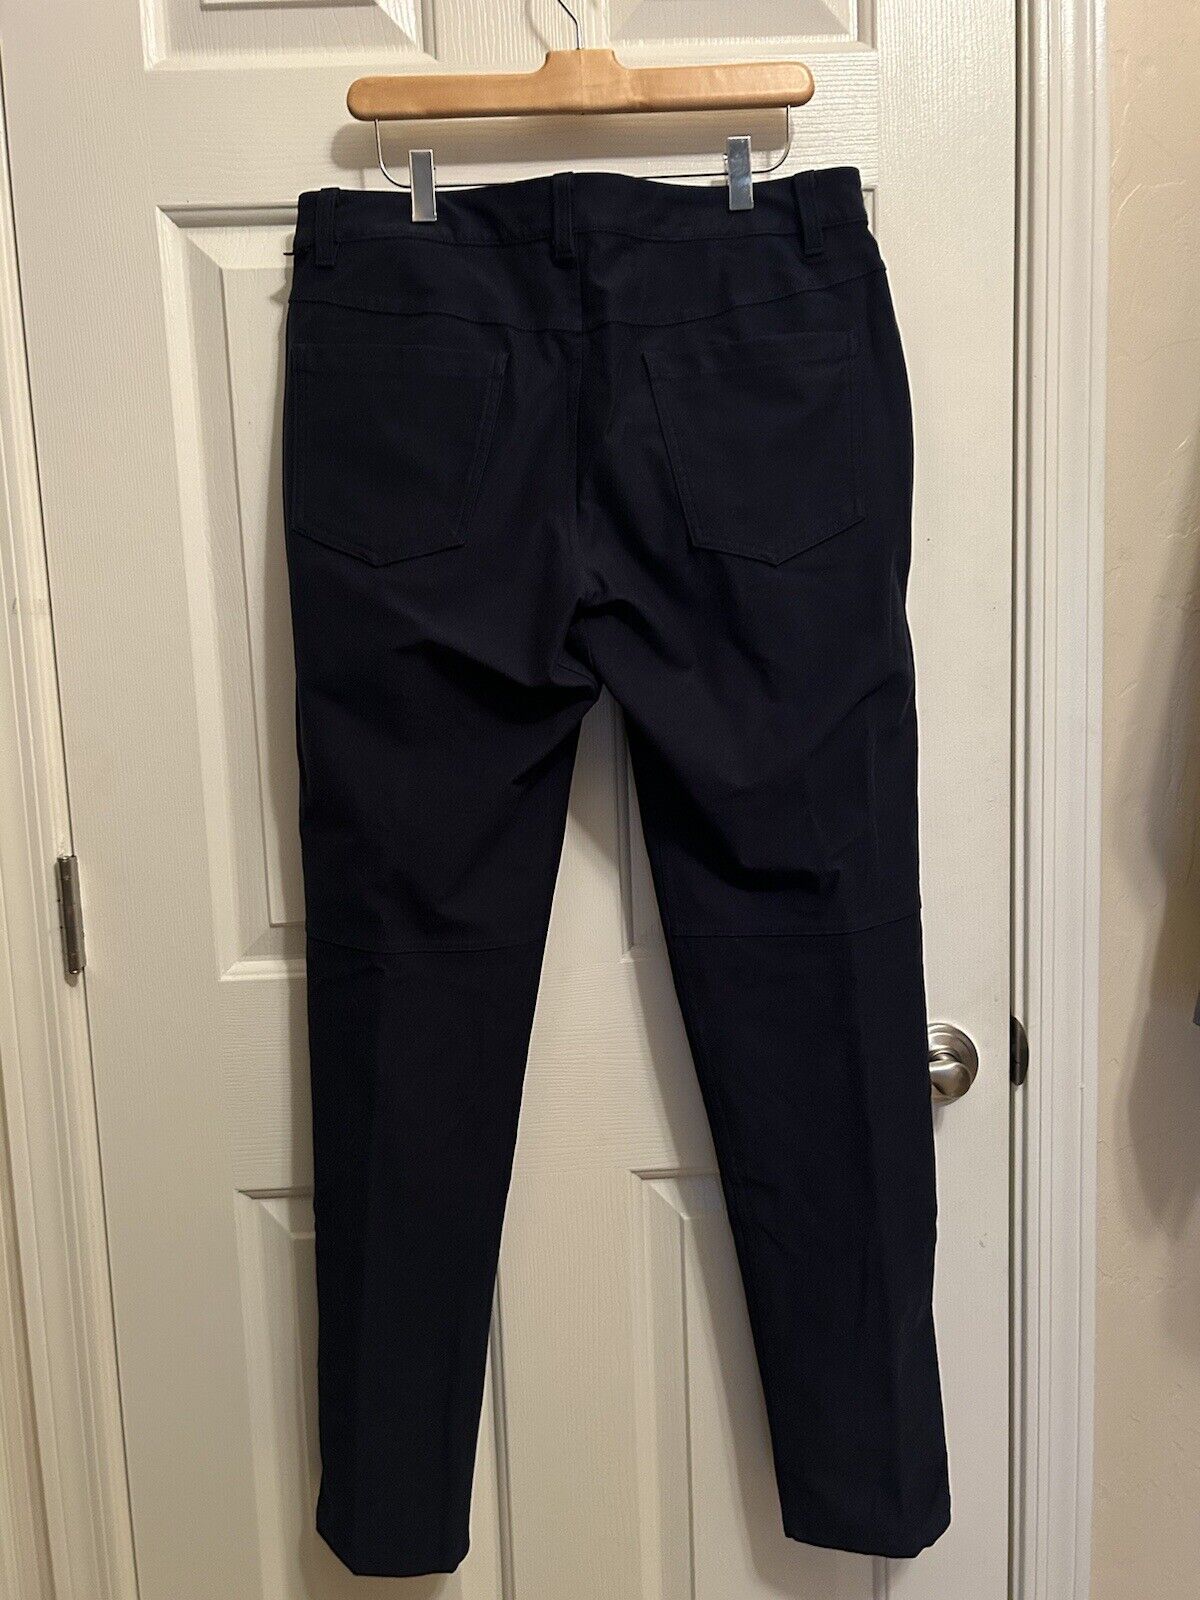 Men’s Lululemon 5 Pocket Navy Pants.. Size 33 - image 4